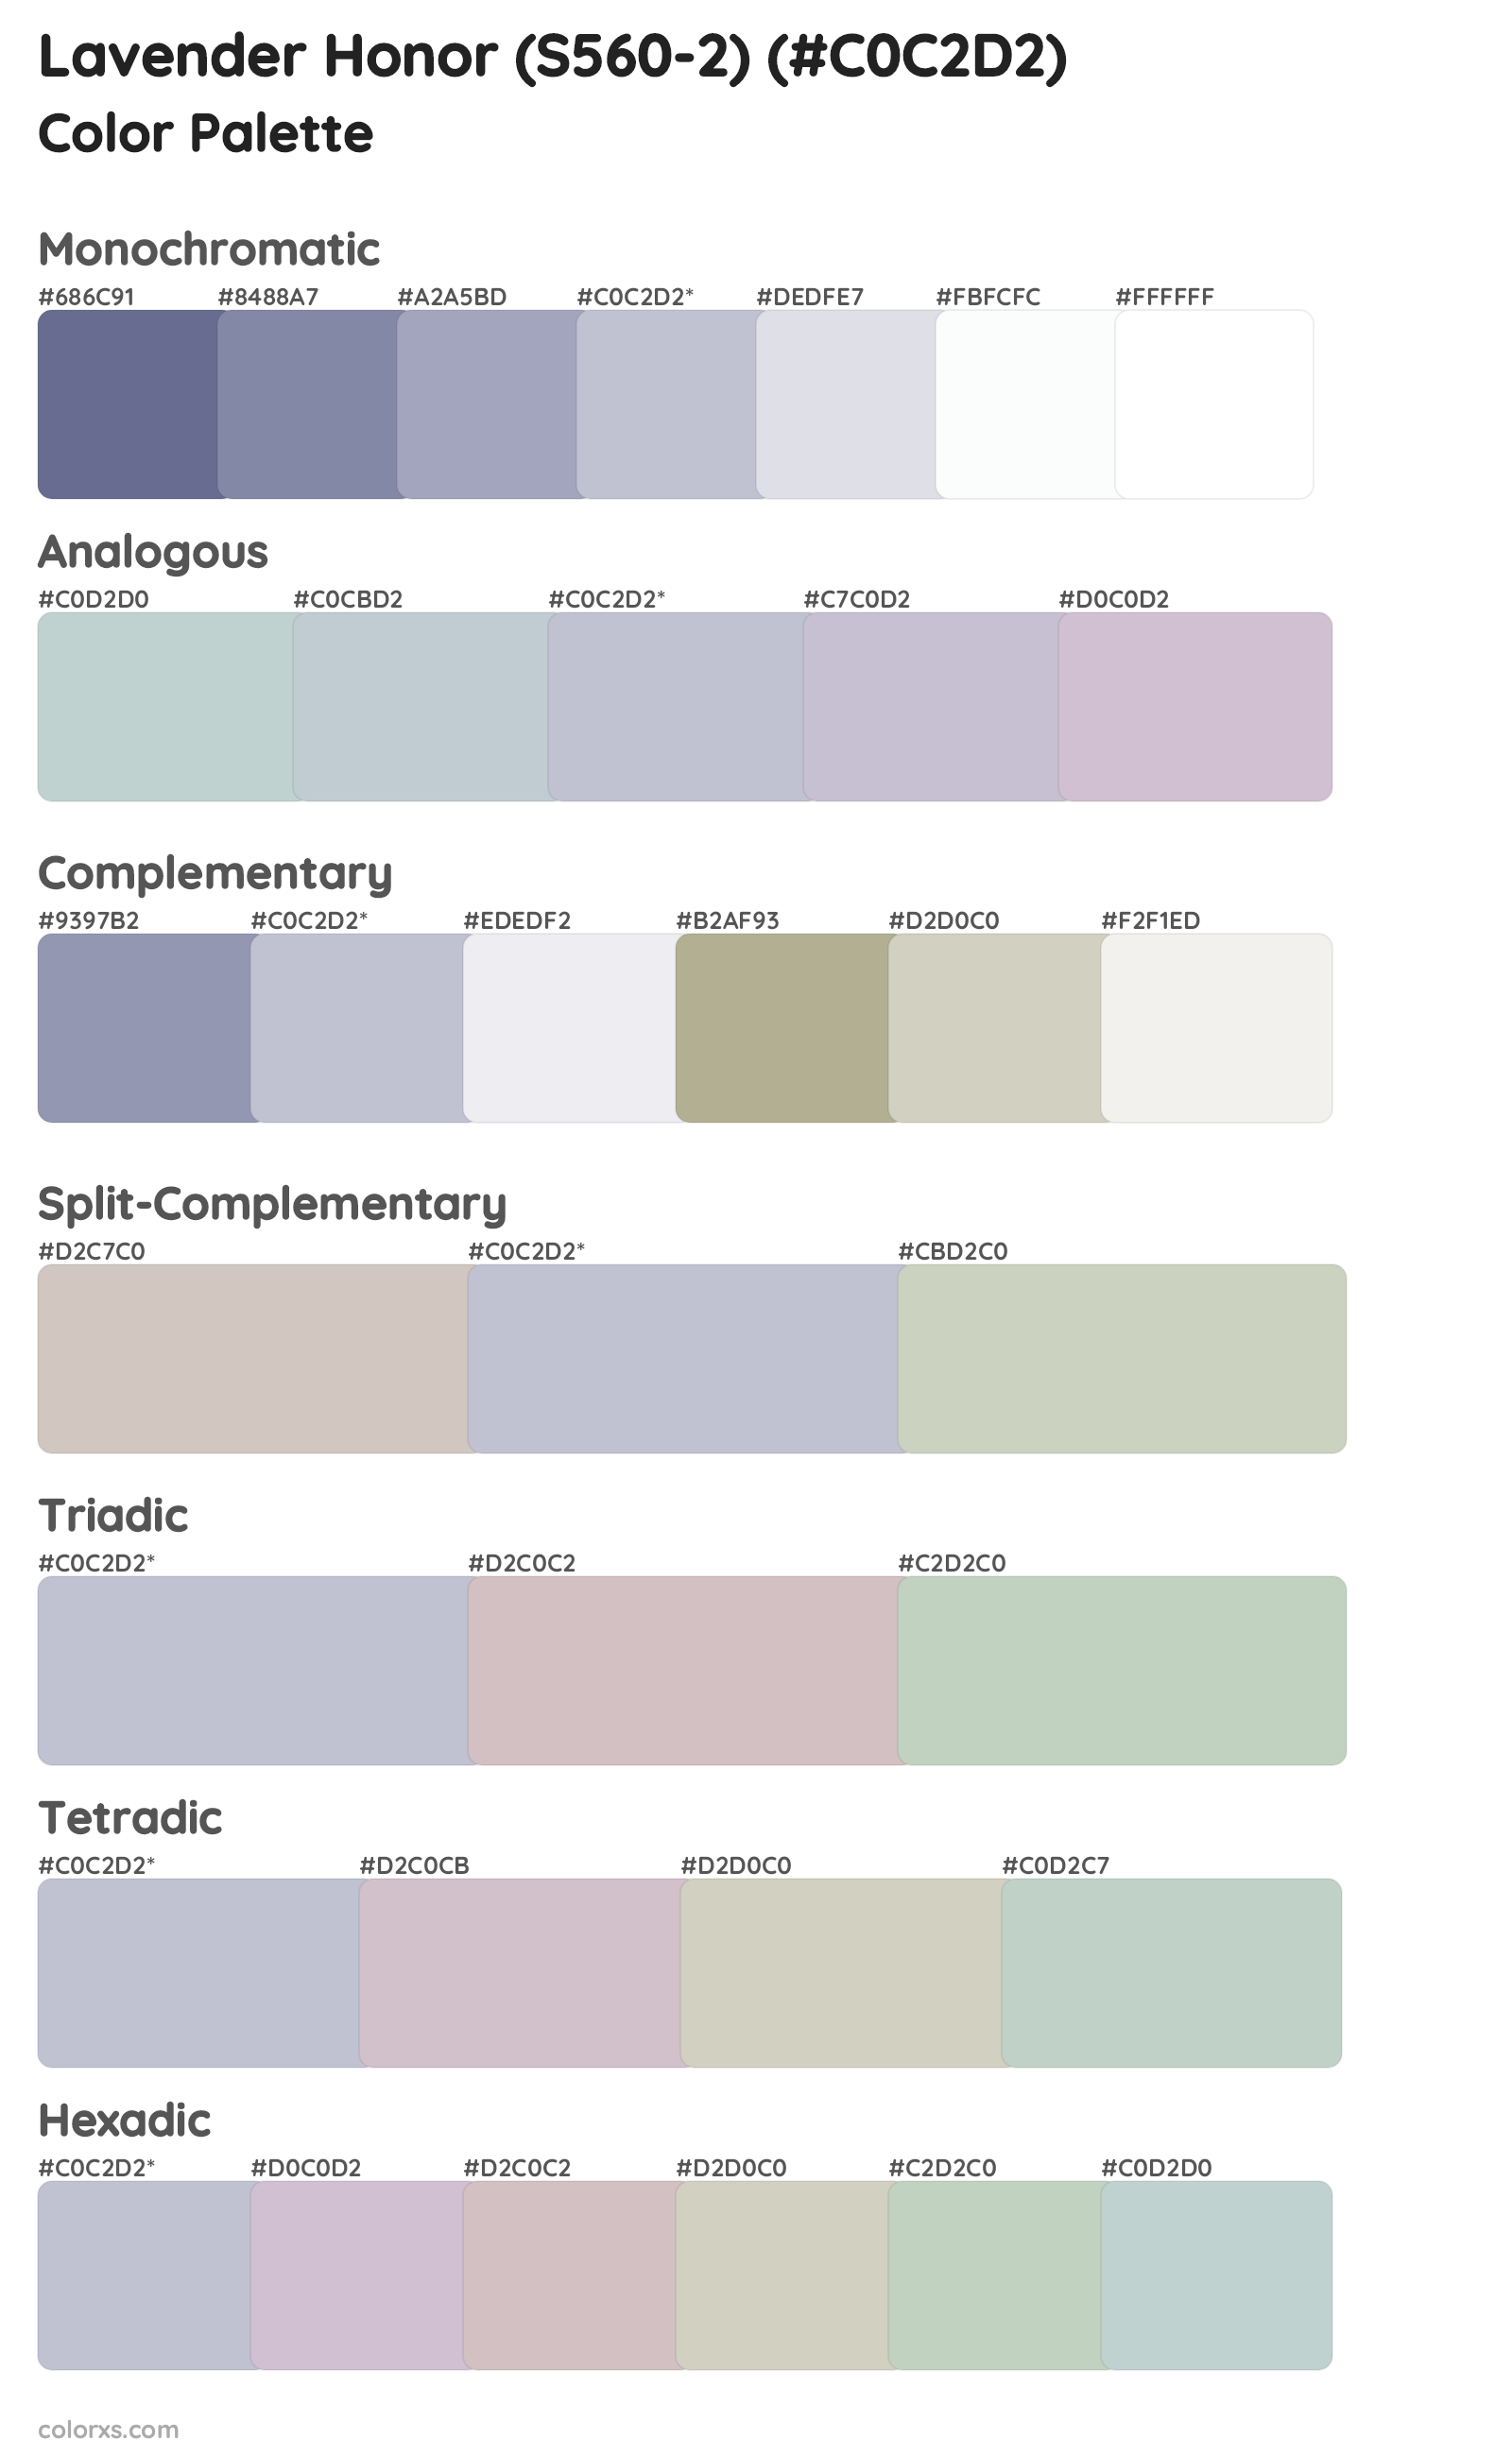 Lavender Honor (S560-2) Color Scheme Palettes